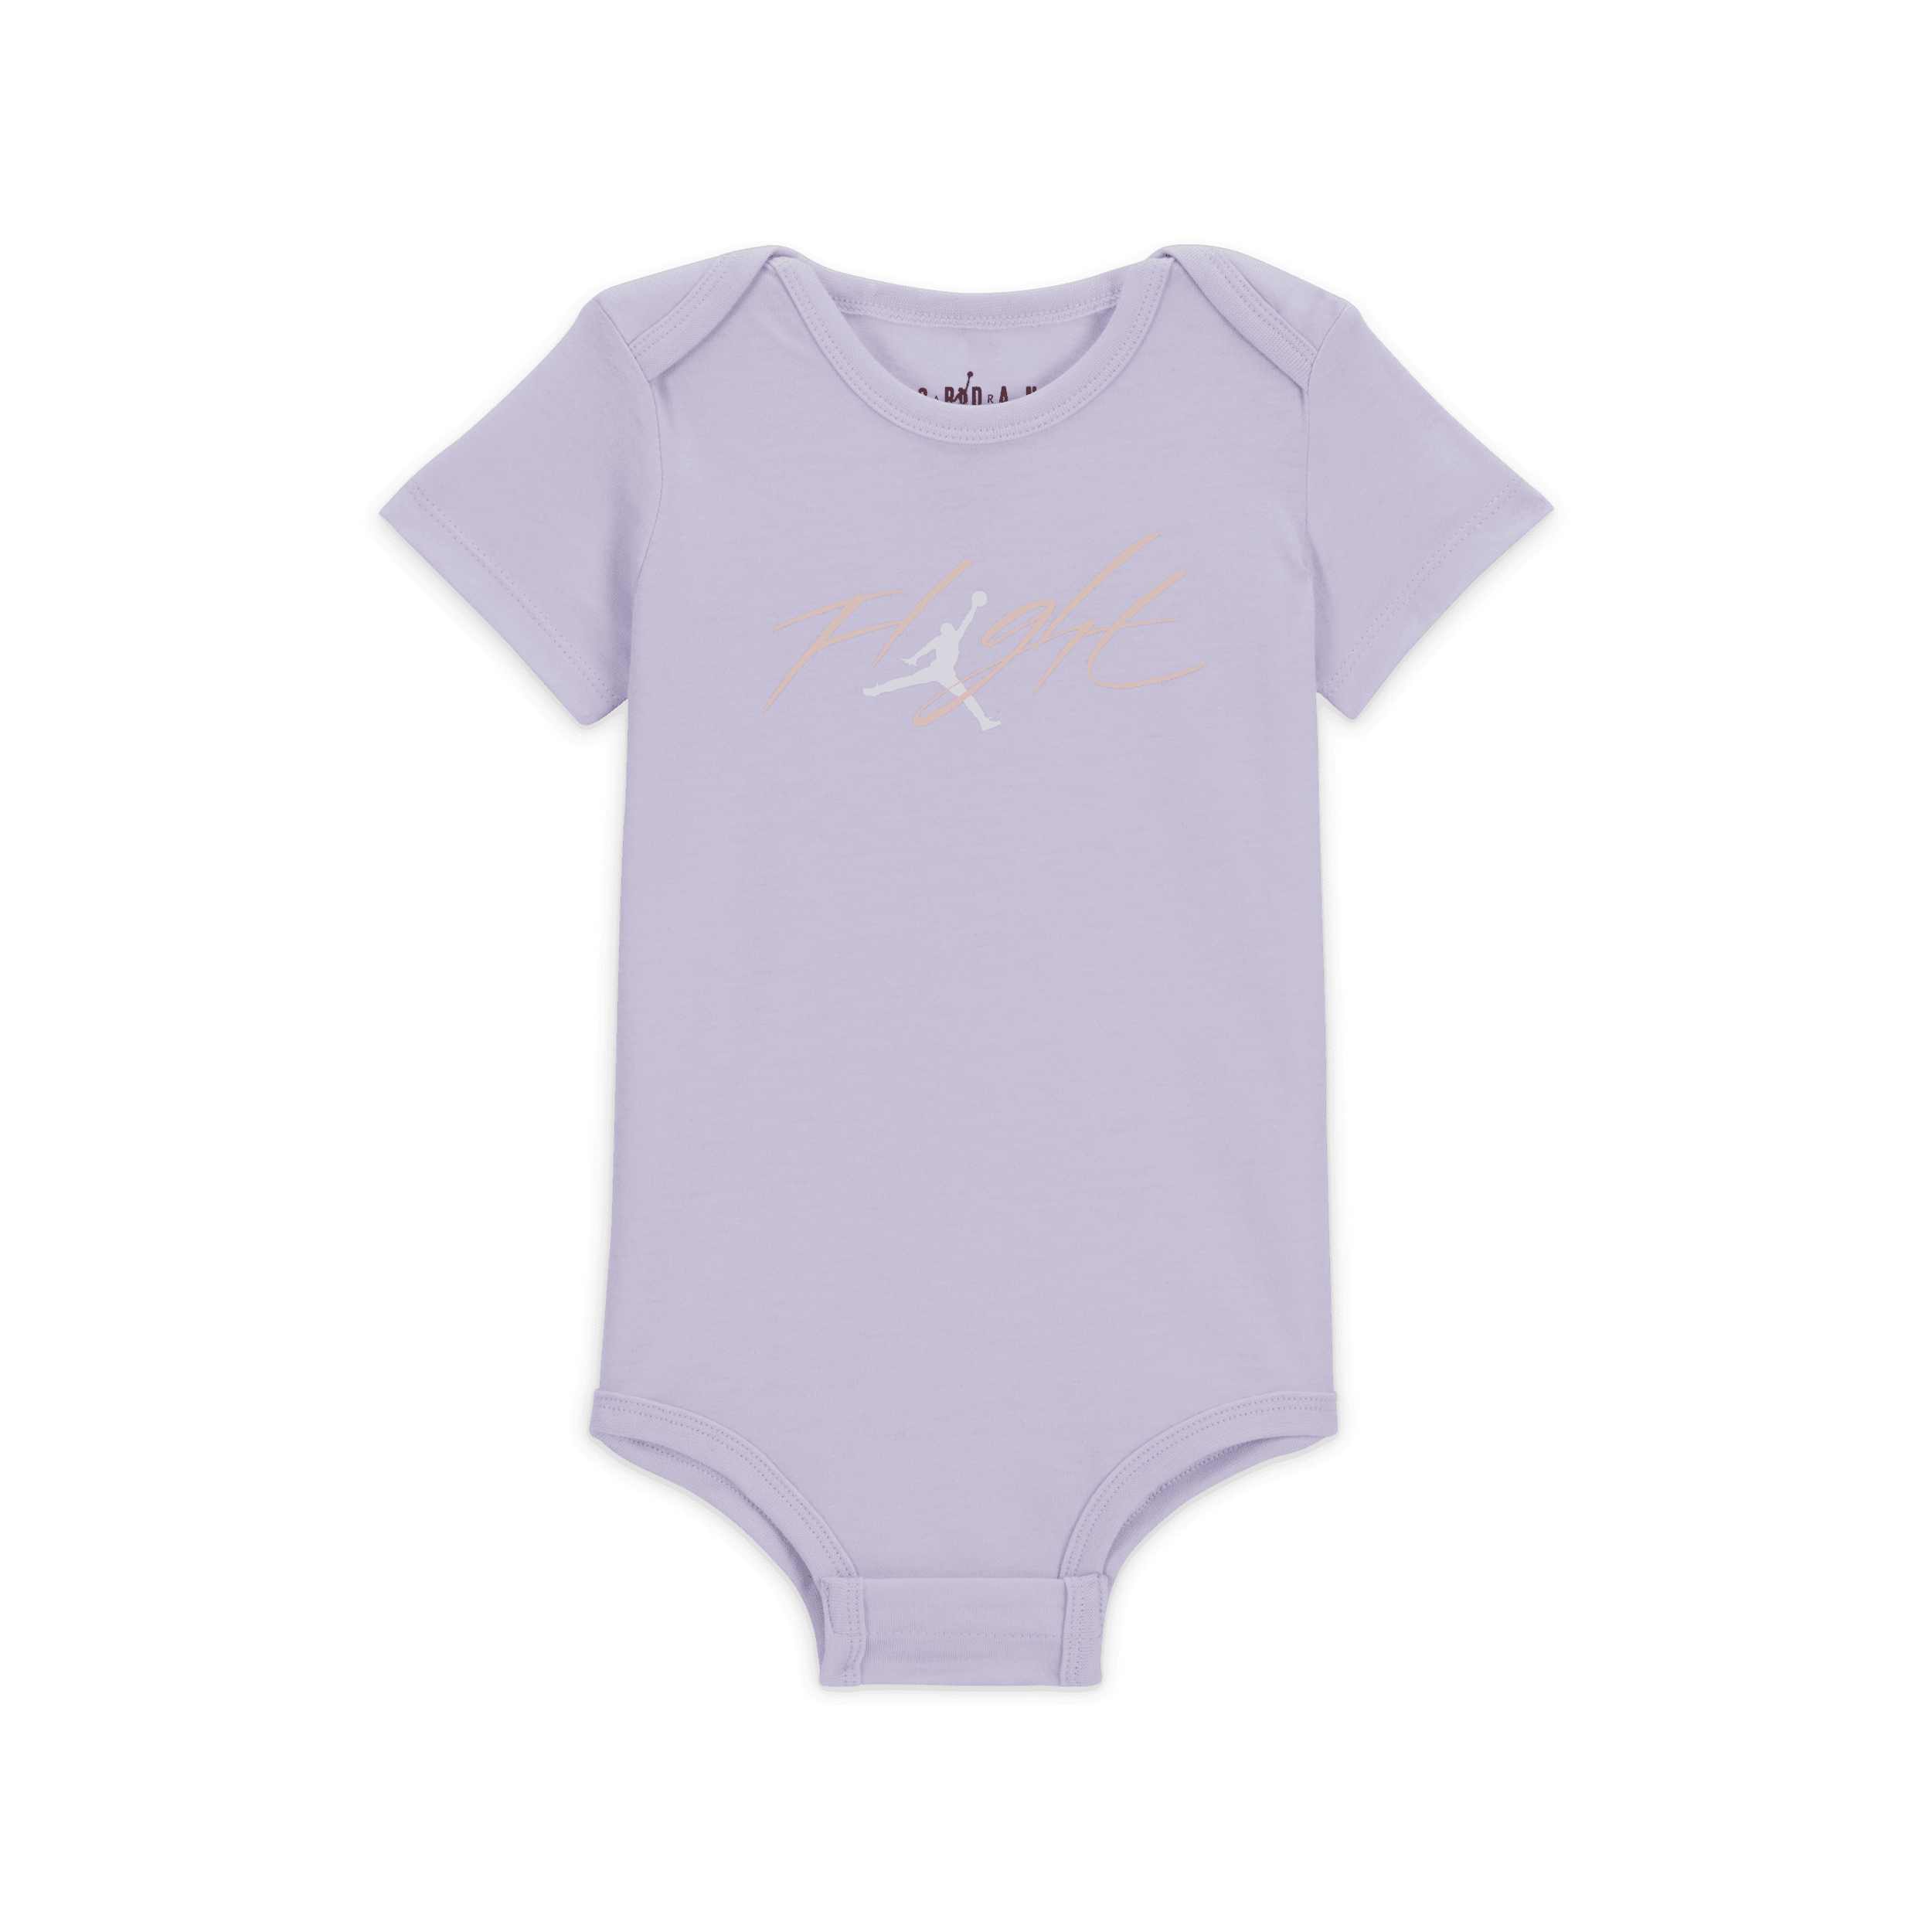 Jordan Flight Patch rompertjes met print voor baby's (12-24 maanden) Roze